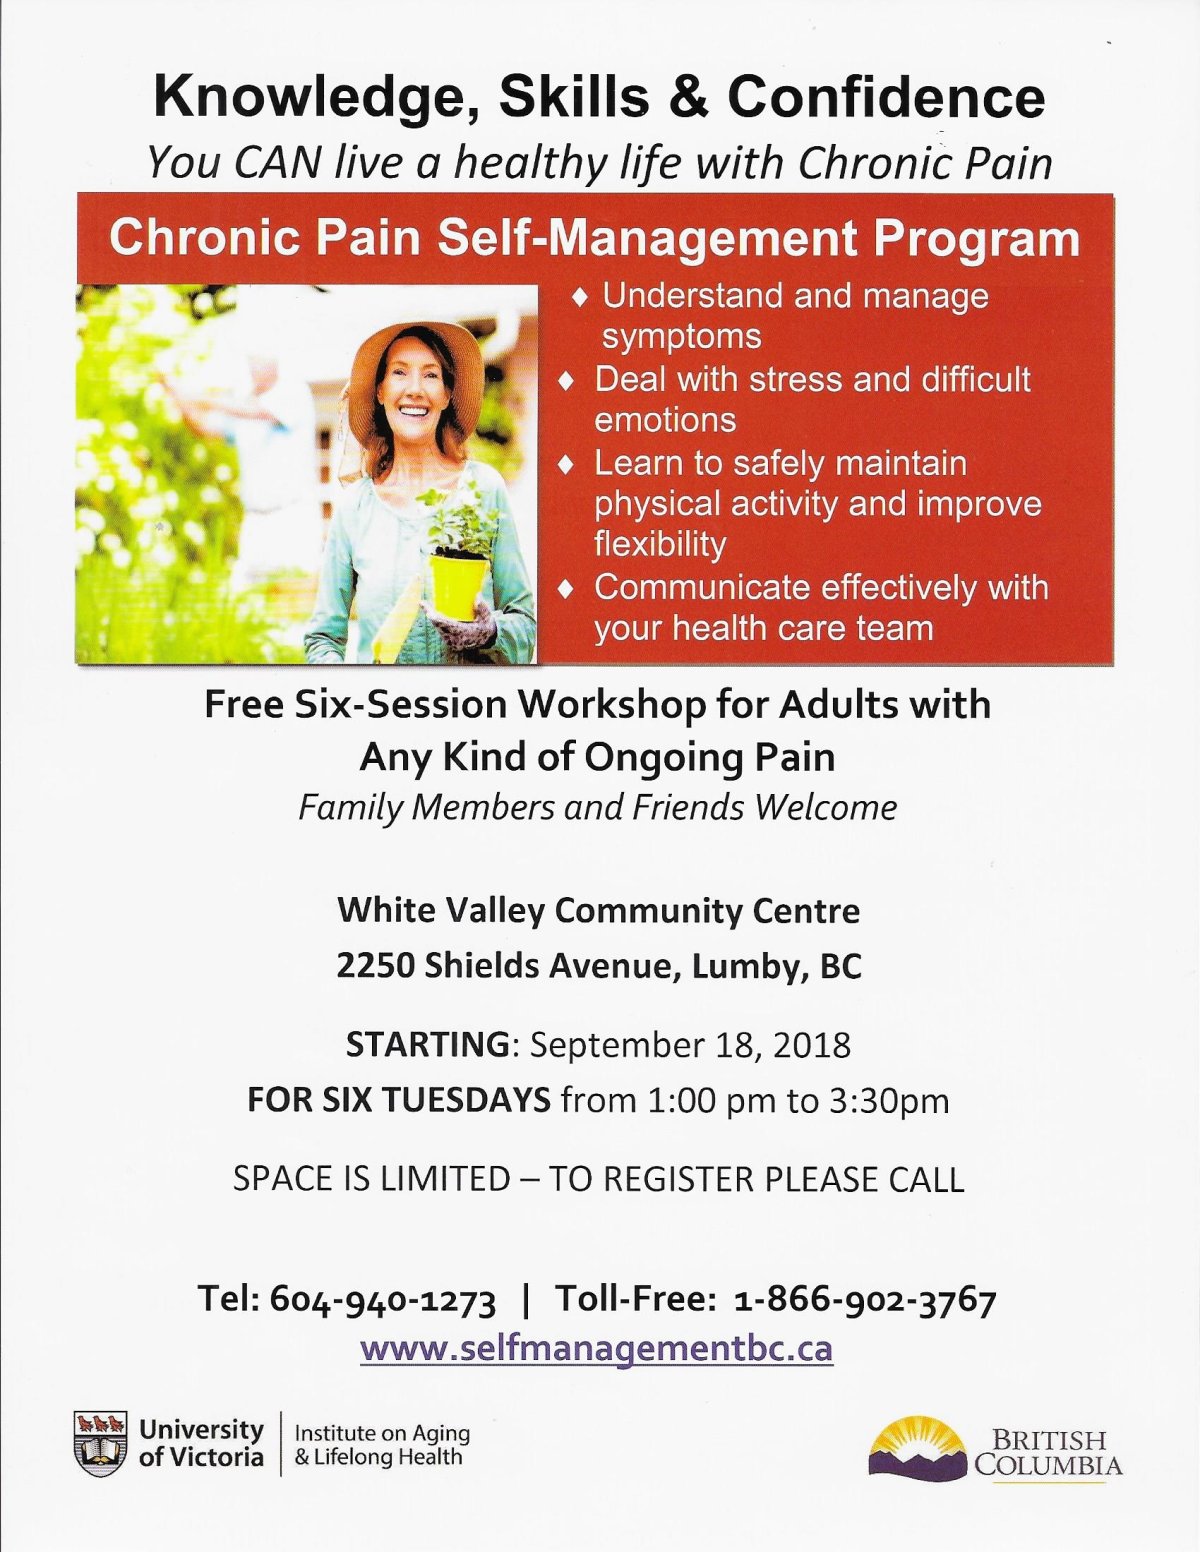 Chronic Pain Self-Management Program - image